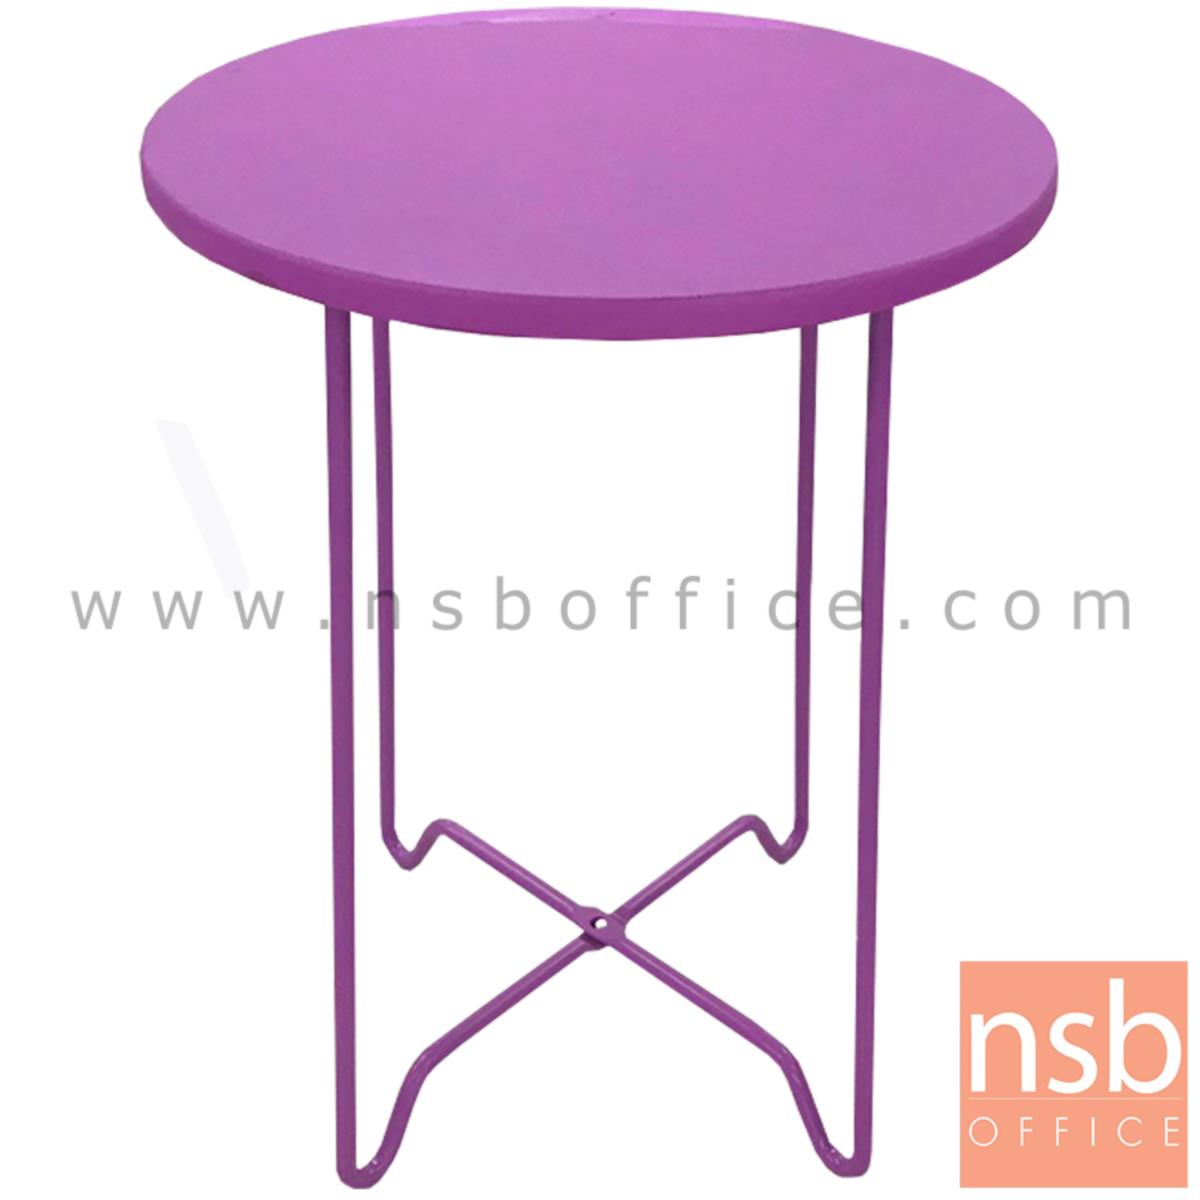 โต๊ะกลมโมเดิร์นสีม่วง  ขนาด 30Di*41H cm. ขาเหล็ก